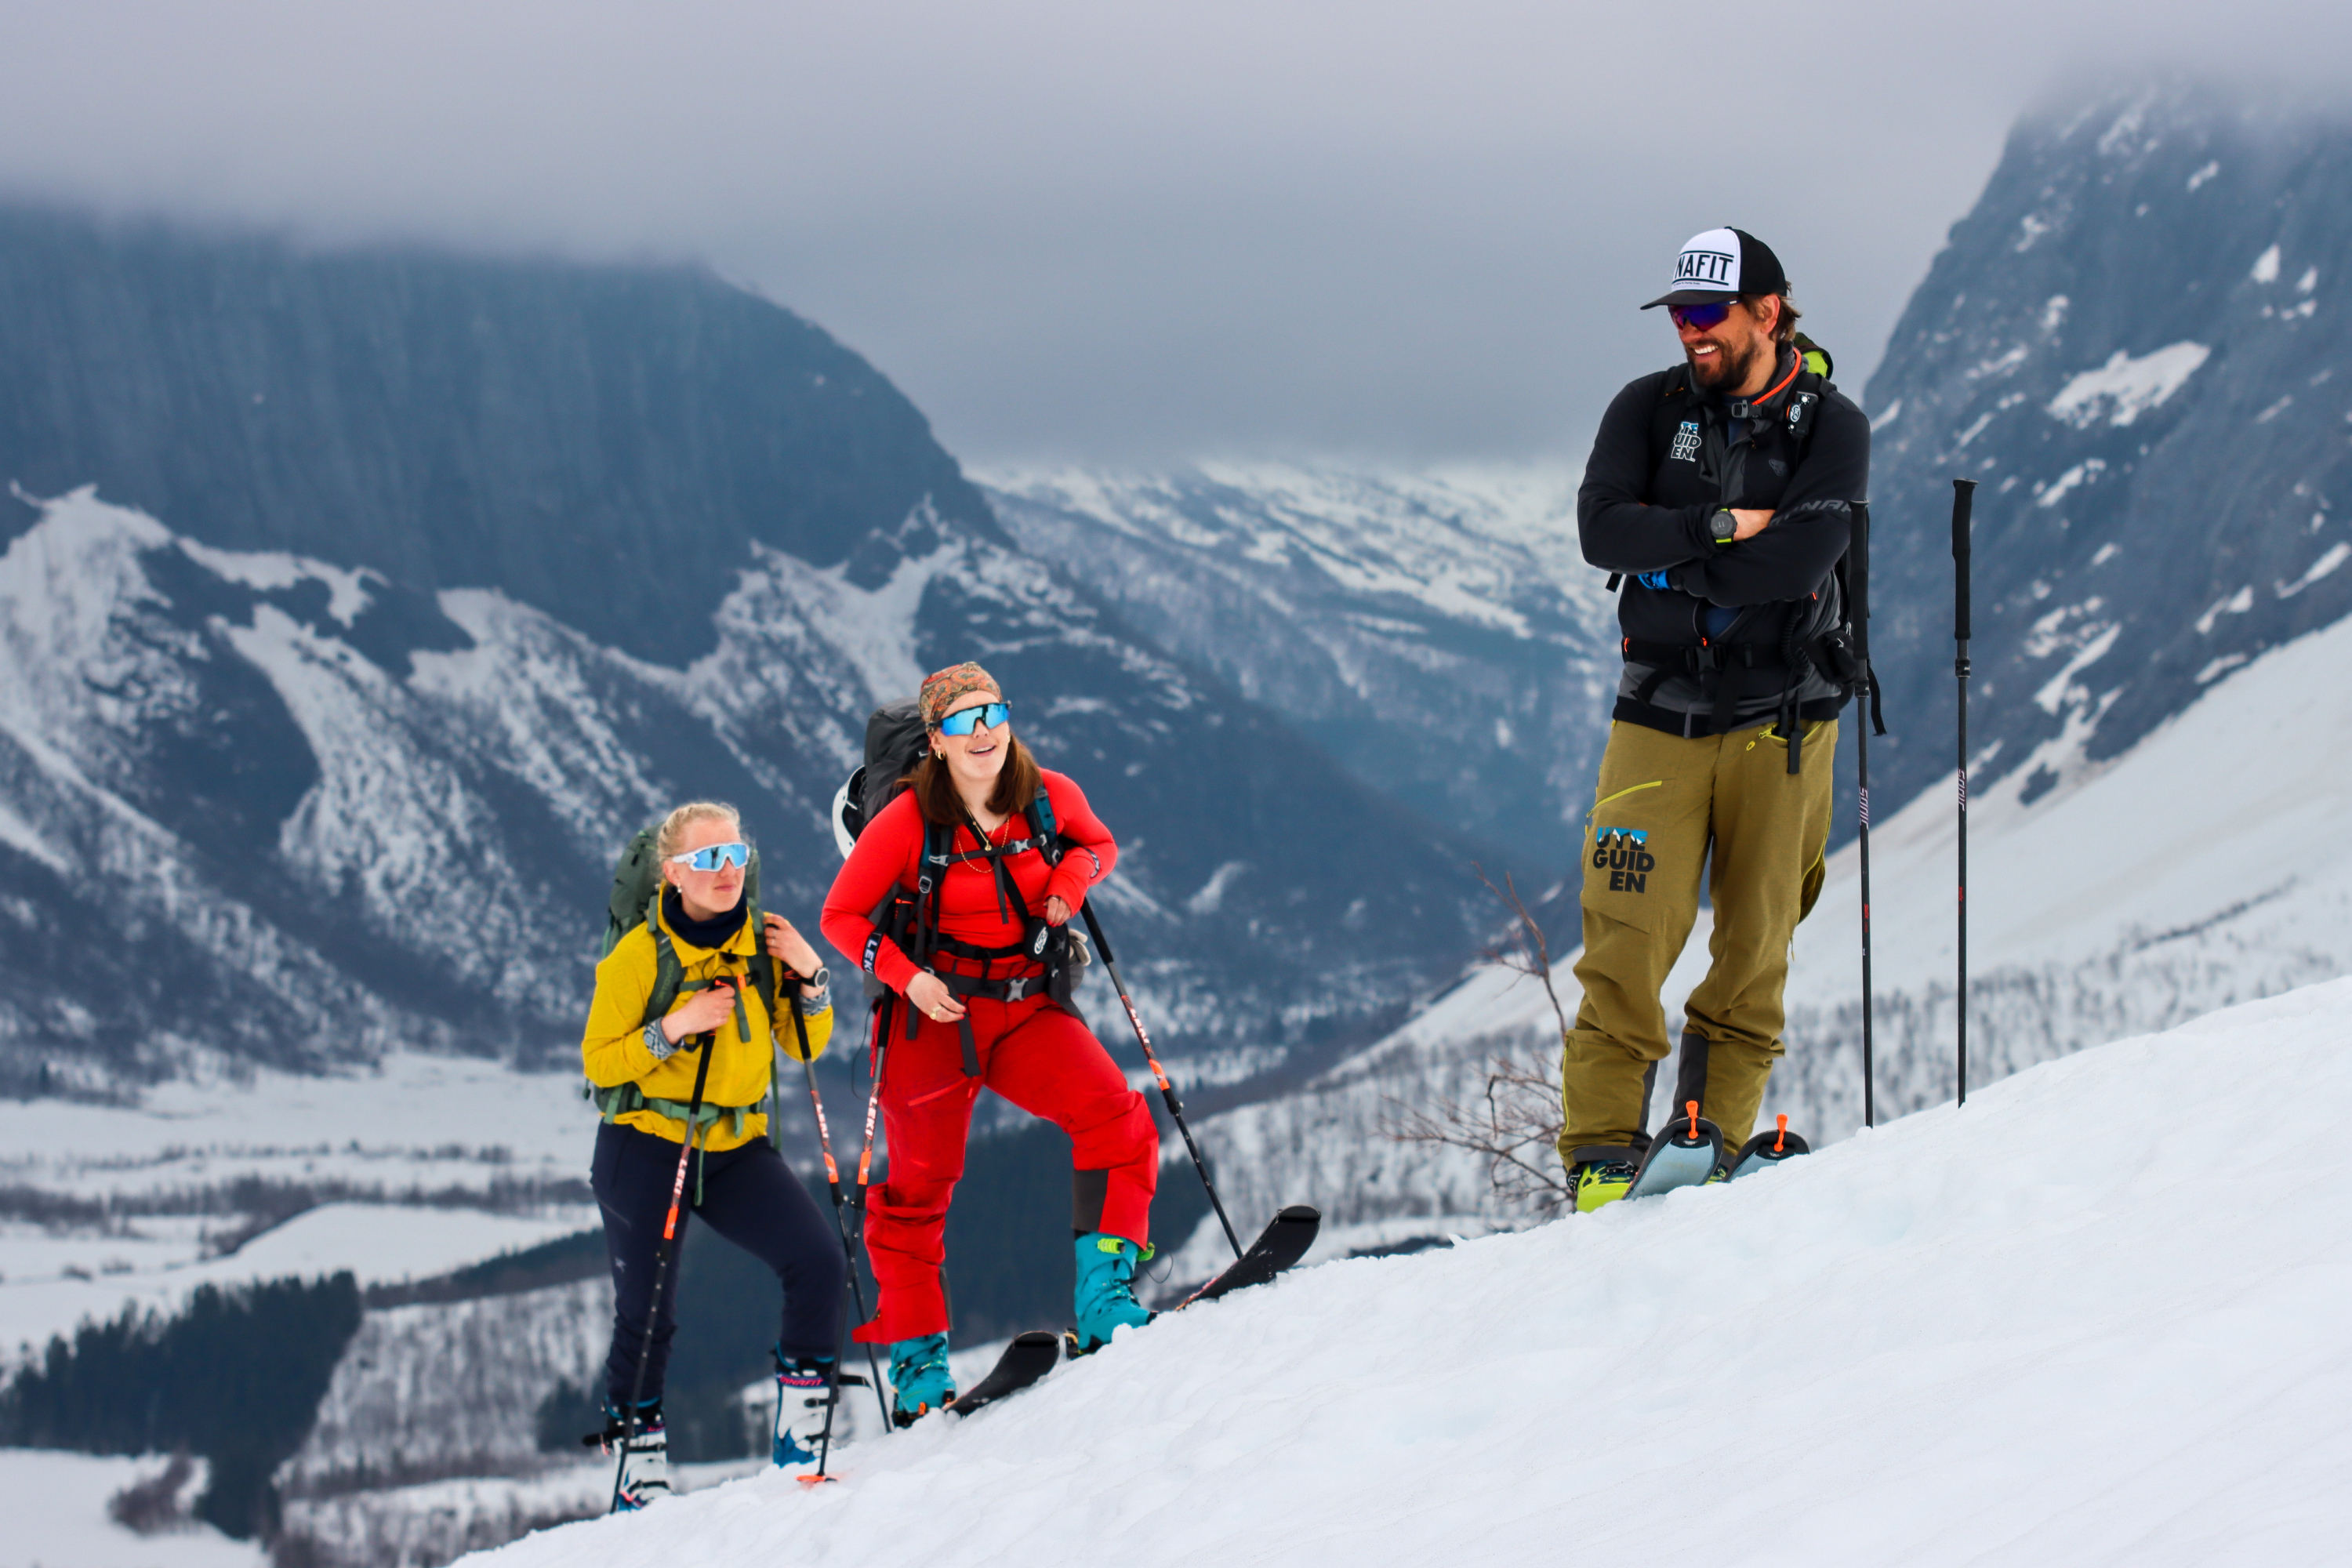 Ski touring in Norway